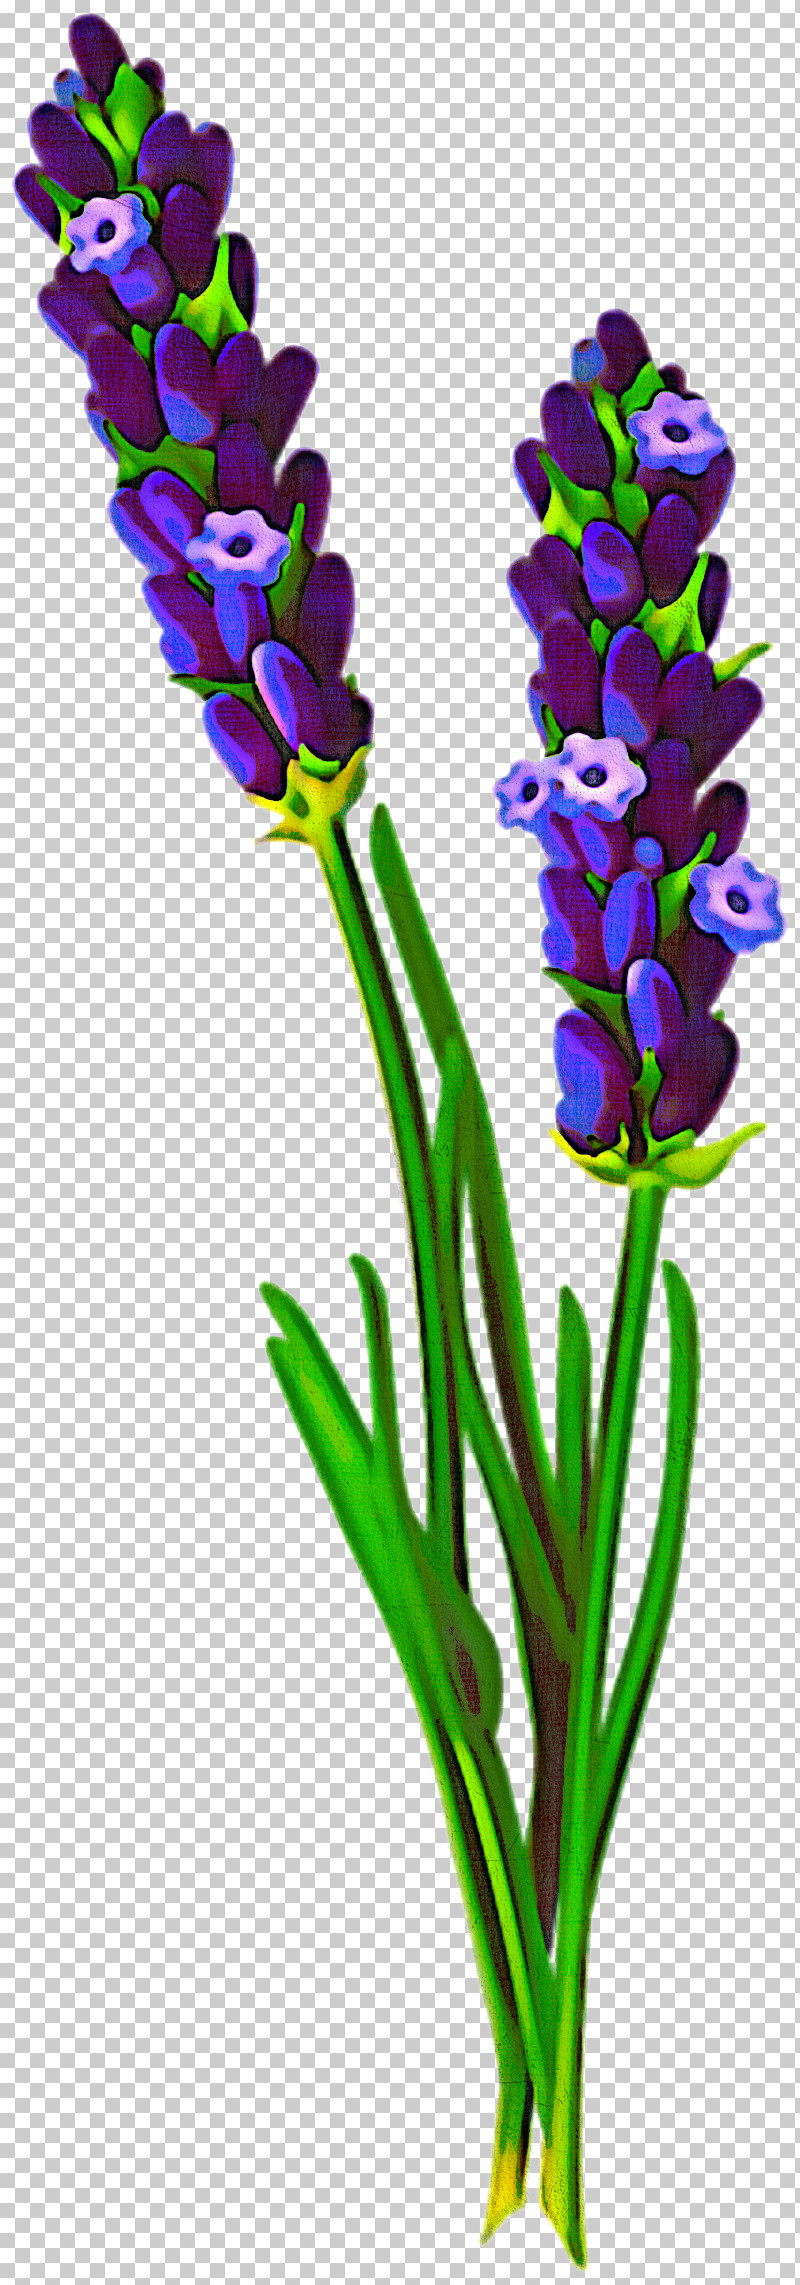 Flower Plant Cut Flowers Pedicel Plant Stem PNG, Clipart, Cut Flowers, Flower, Iris, Pedicel, Plant Free PNG Download